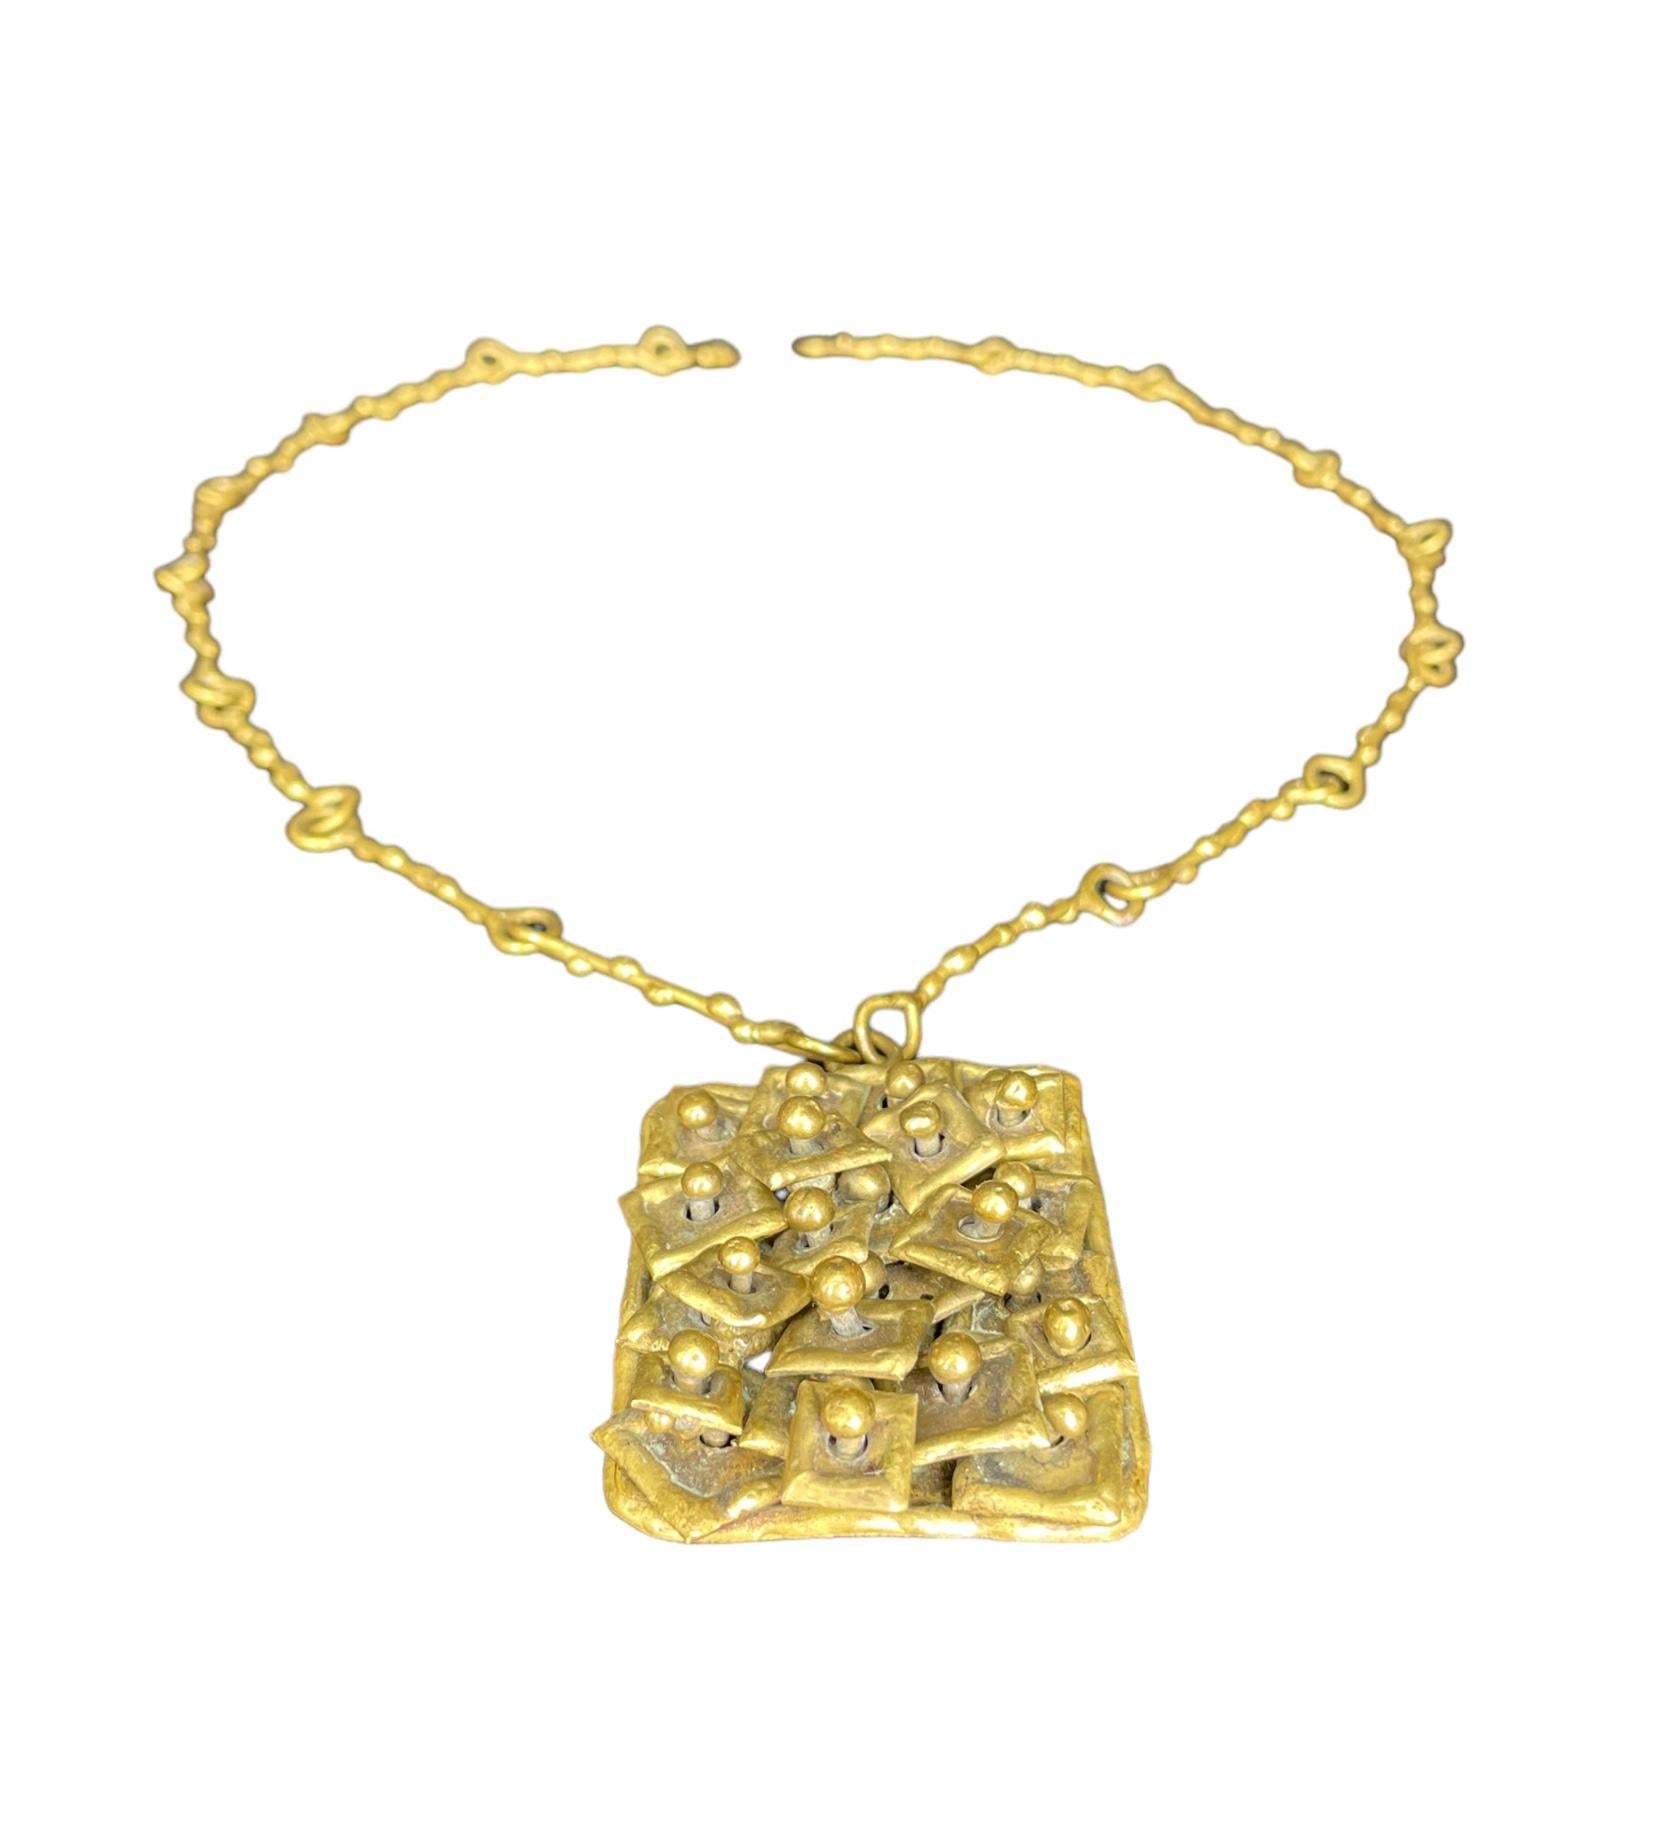 Pal Kepenyes Brutalist Brass Necklace Signed For Sale 1